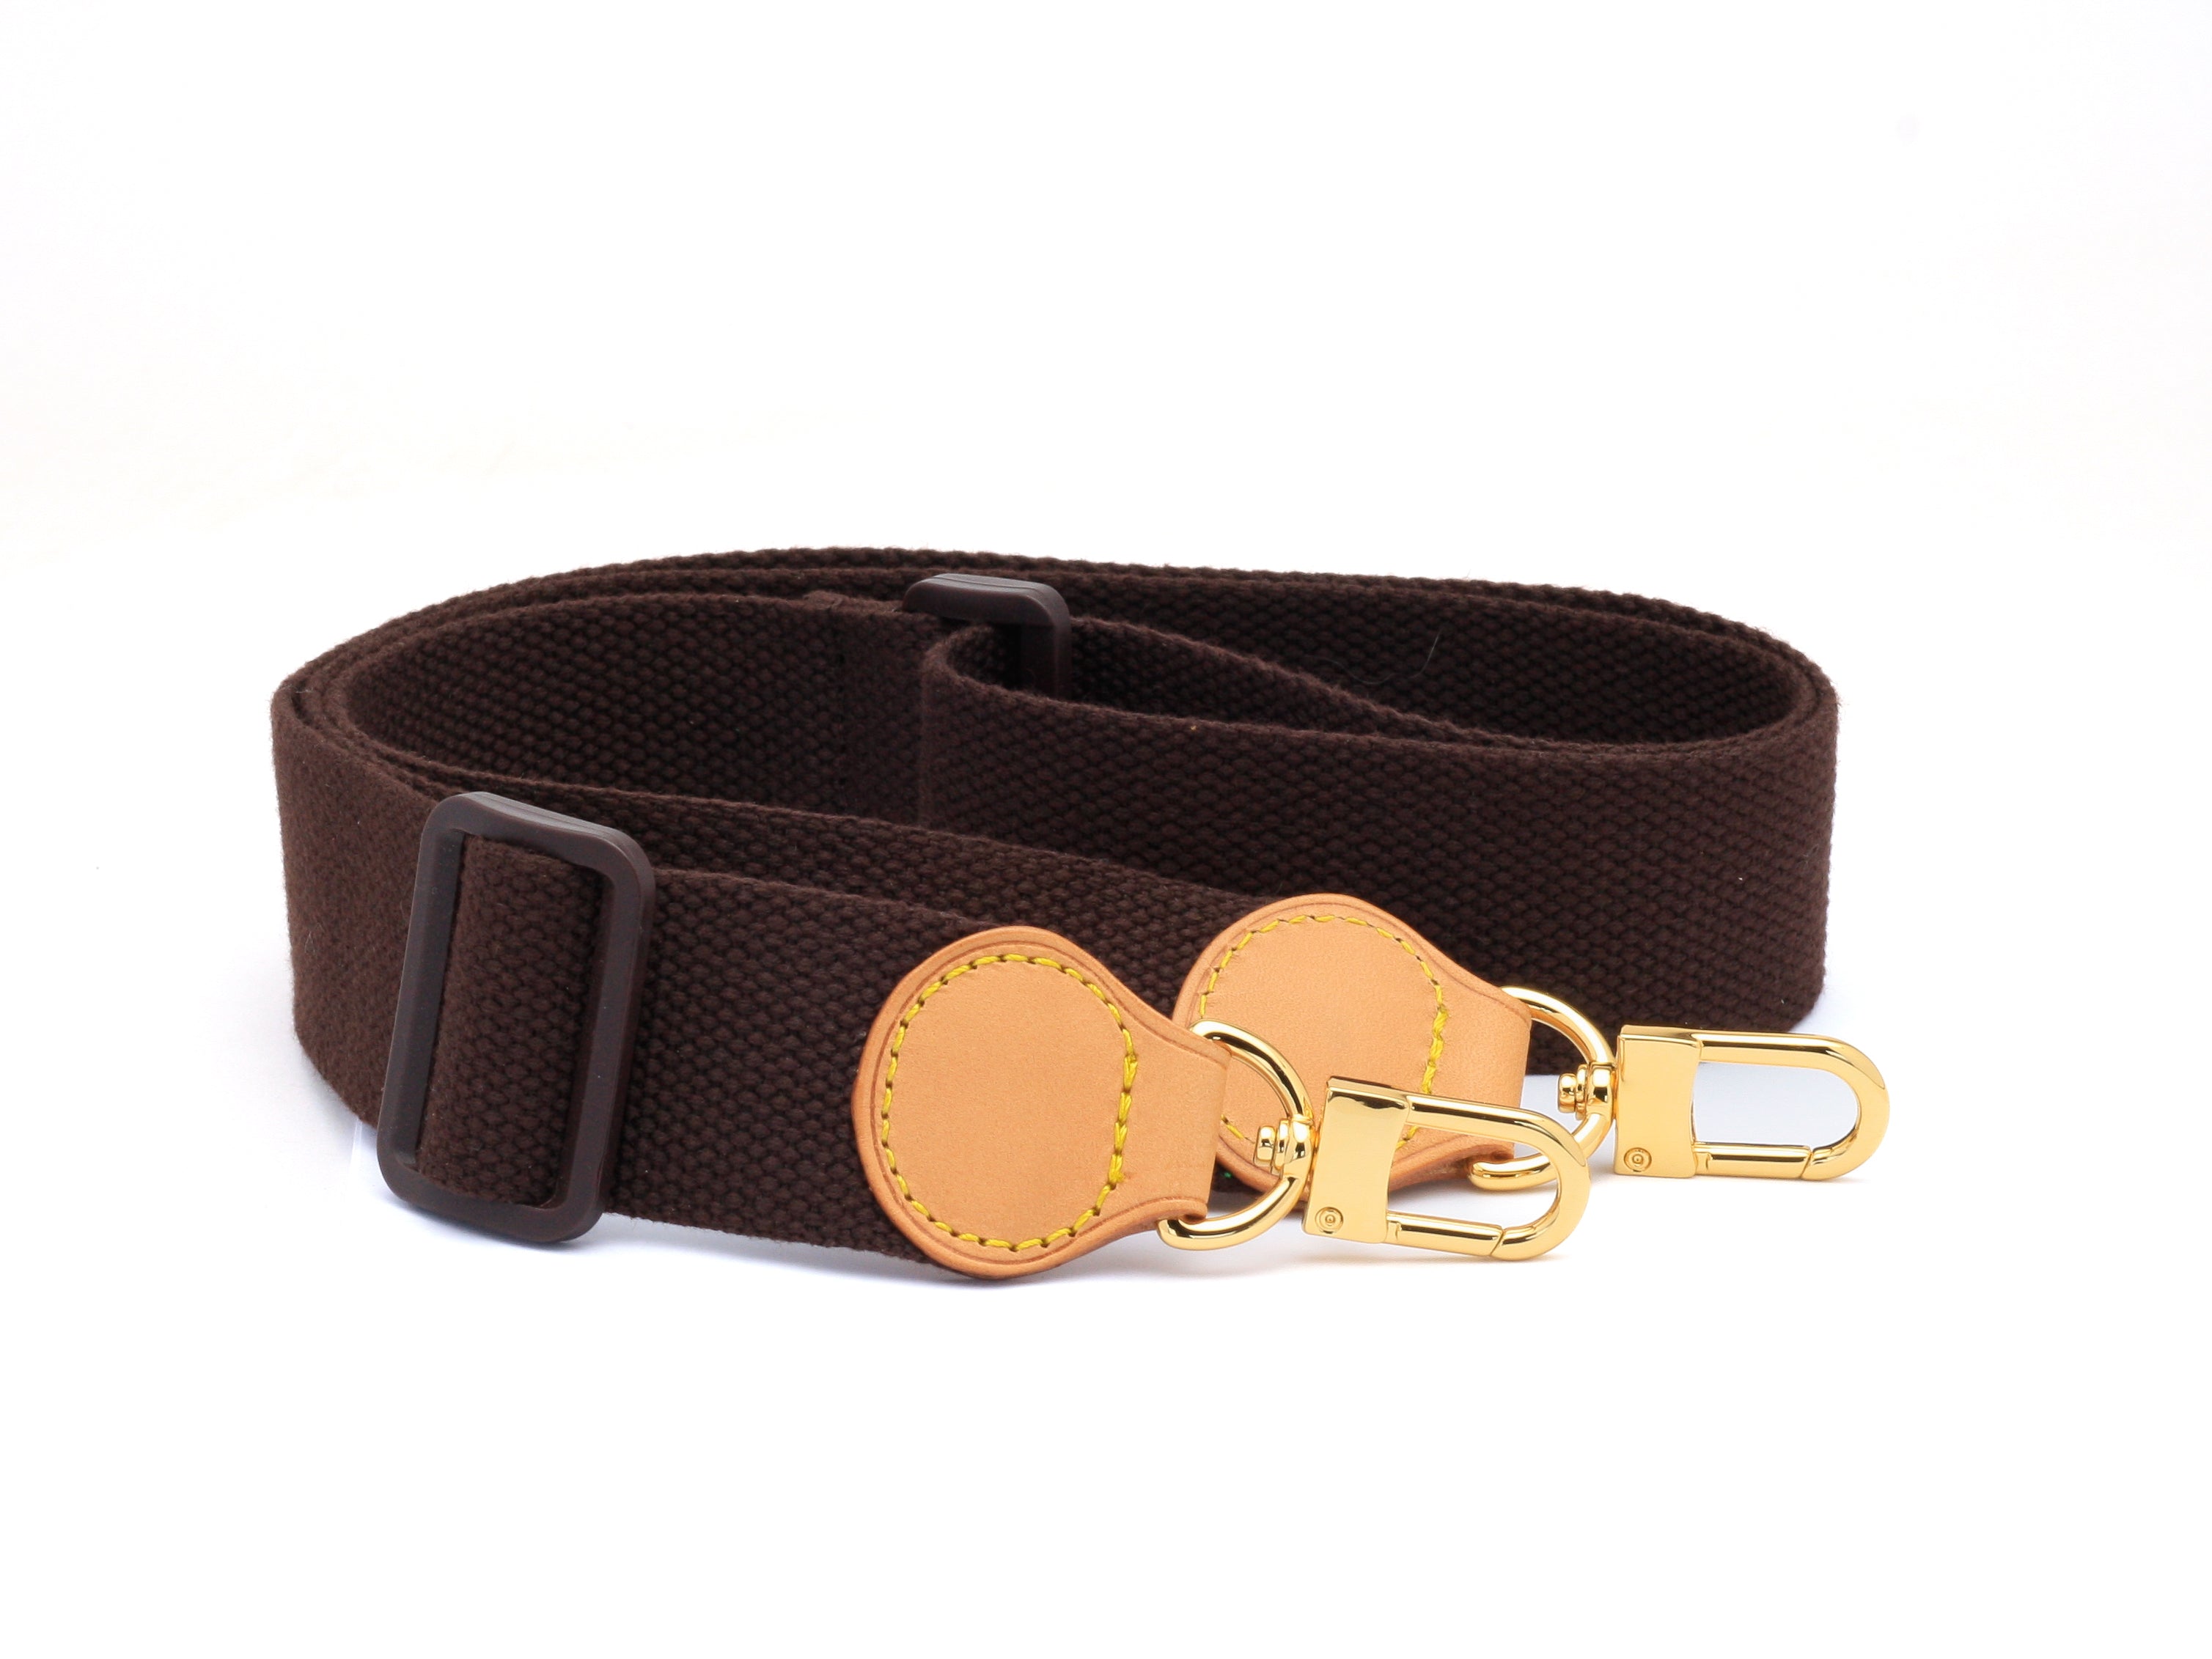 Bag Shoulder Strap Replacement Crossbody Belts Brown Adjustable